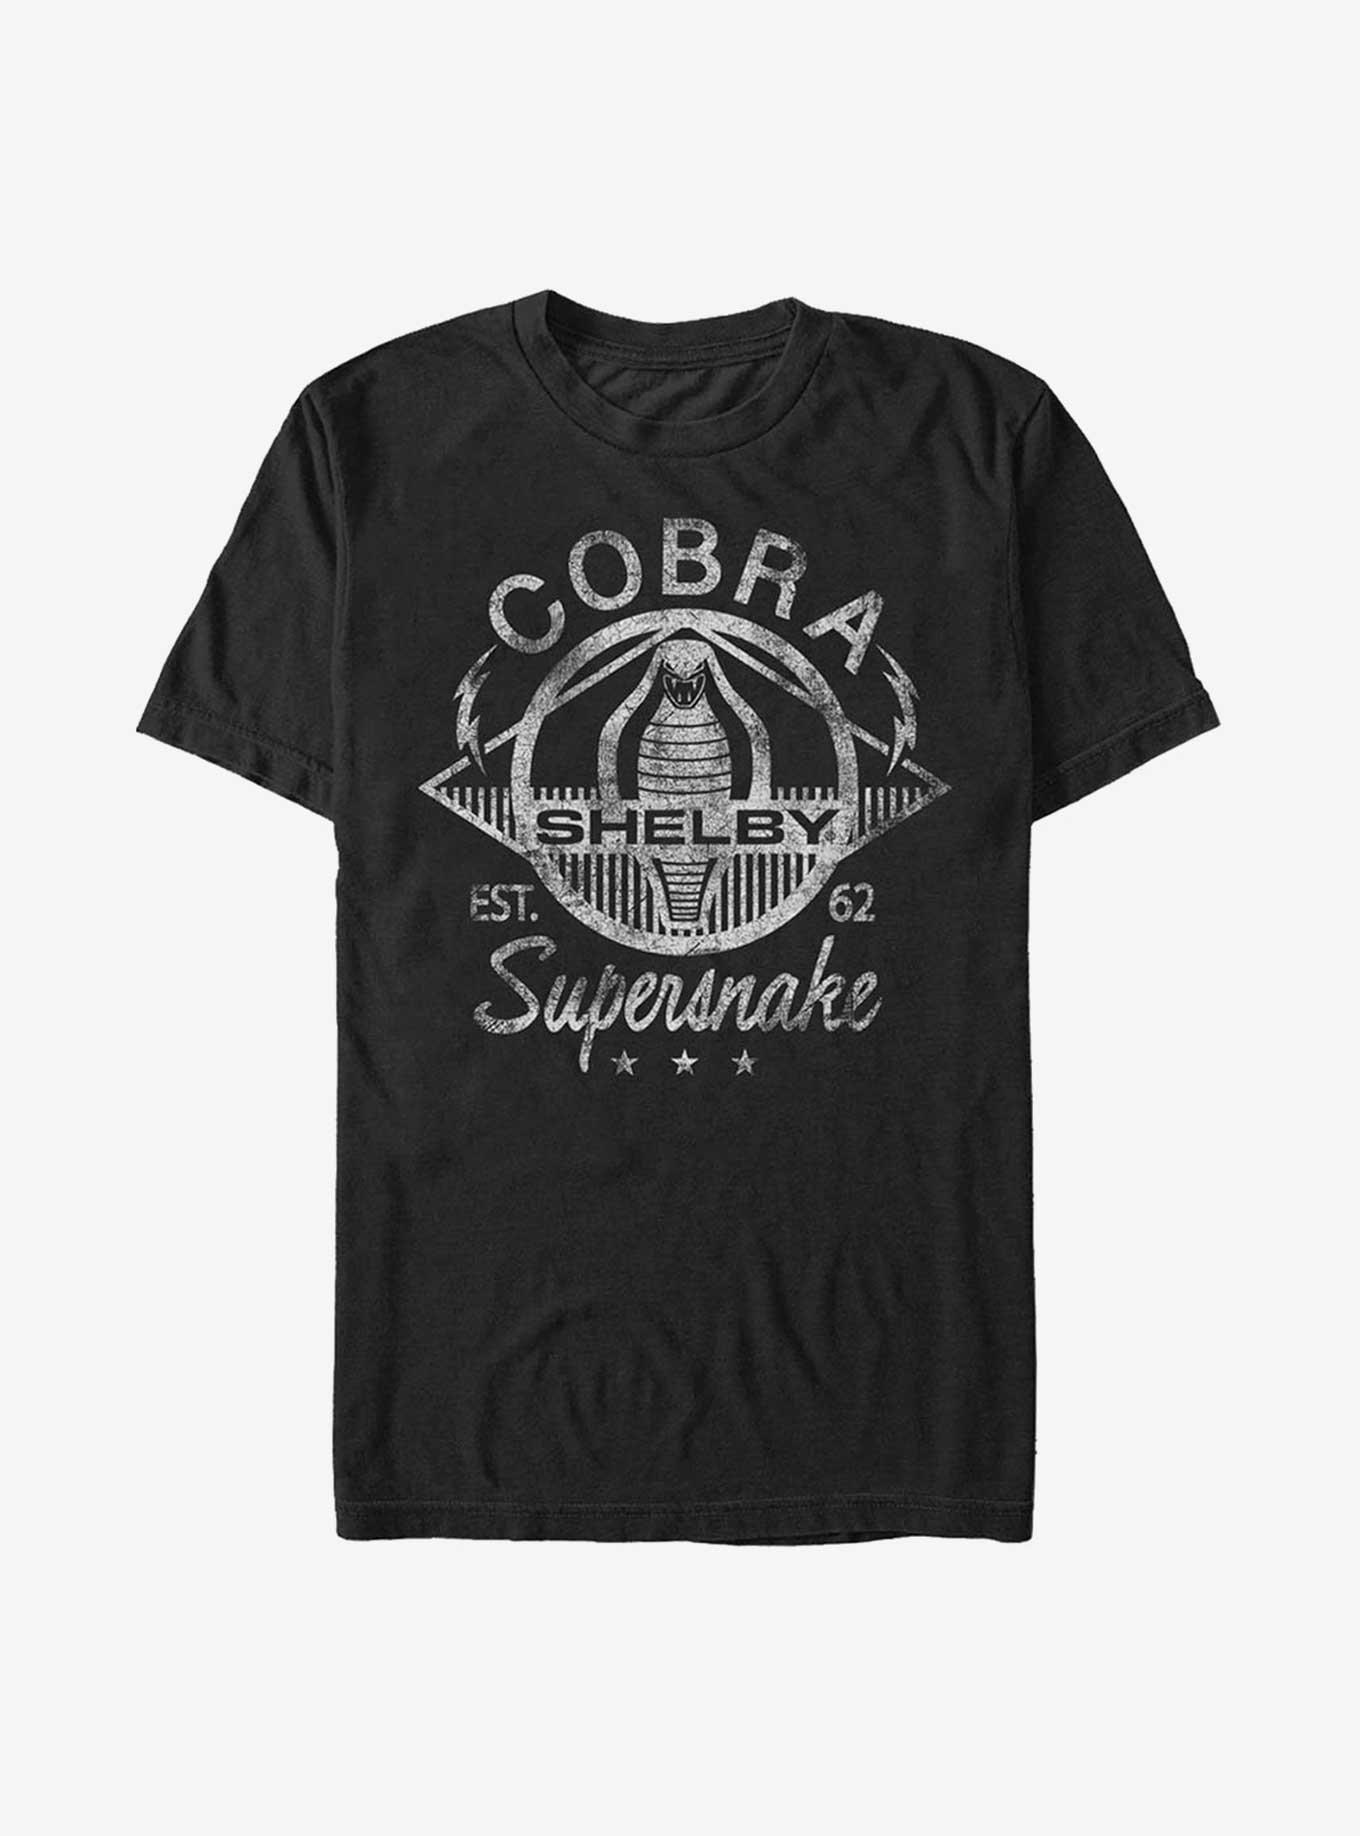 Shelby Cobra Supersnake T-Shirt, BLACK, hi-res